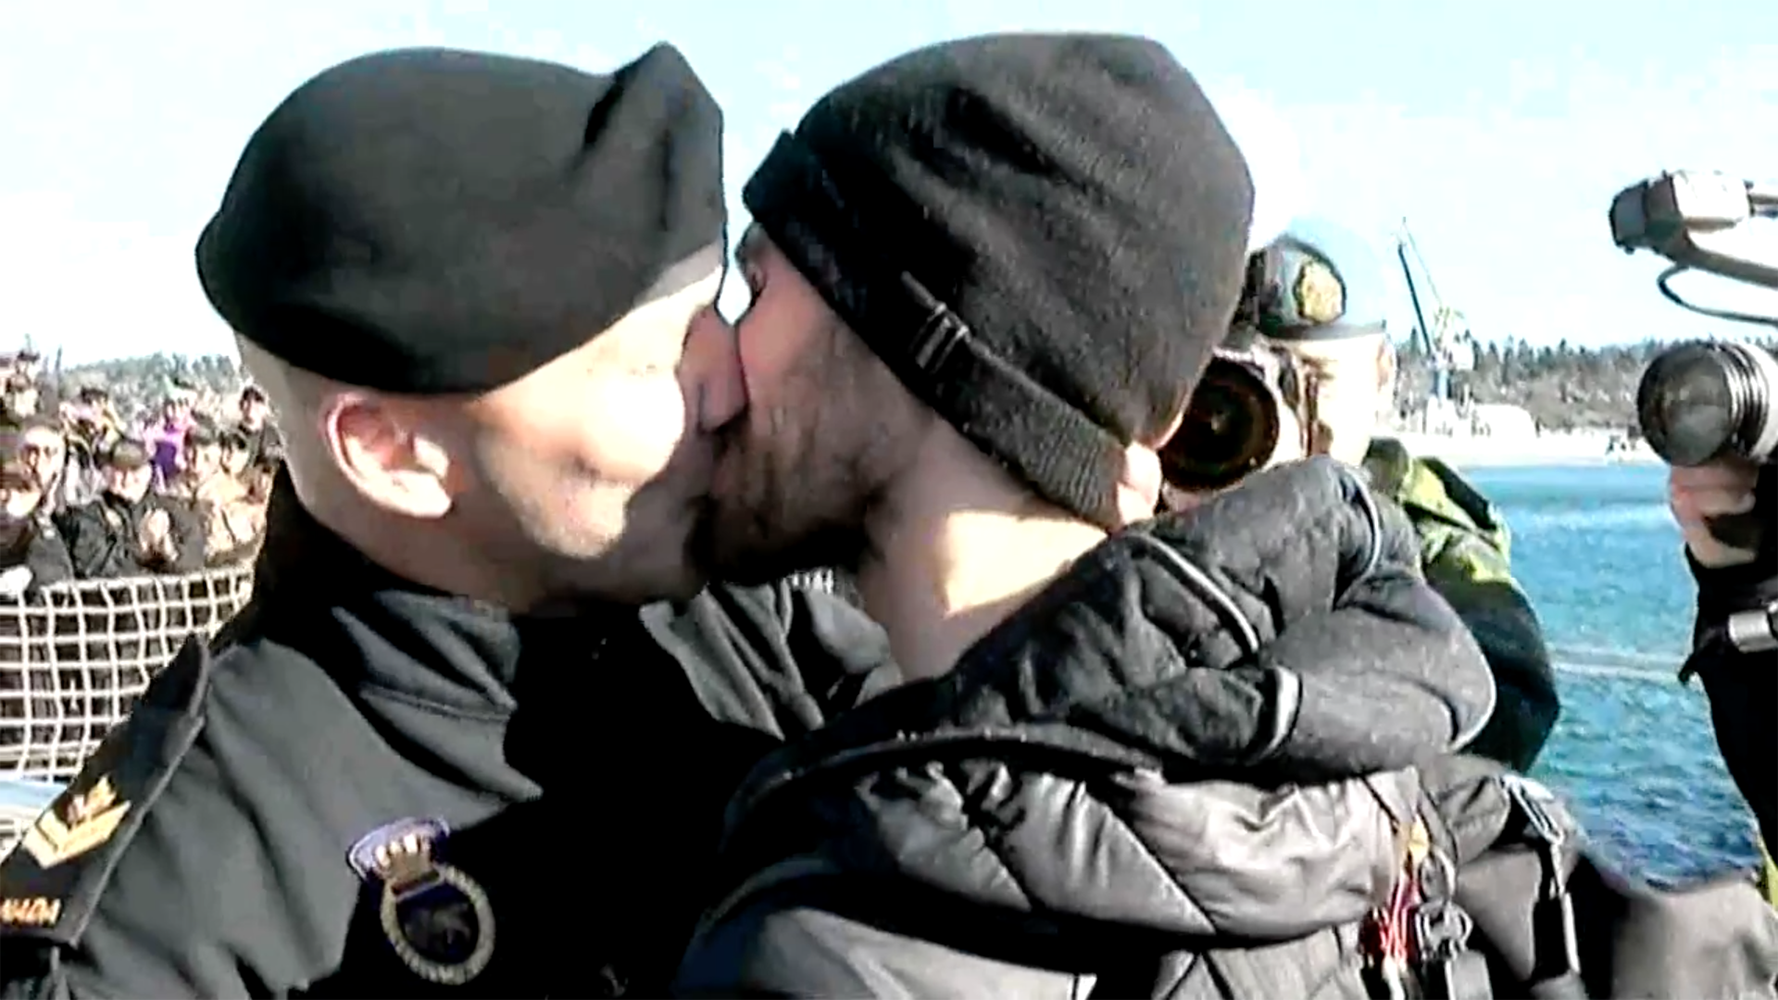 Το πρώτο γκέι φιλί στο καναδικό ναυτικό on camera [ΒΙΝΤΕΟ]